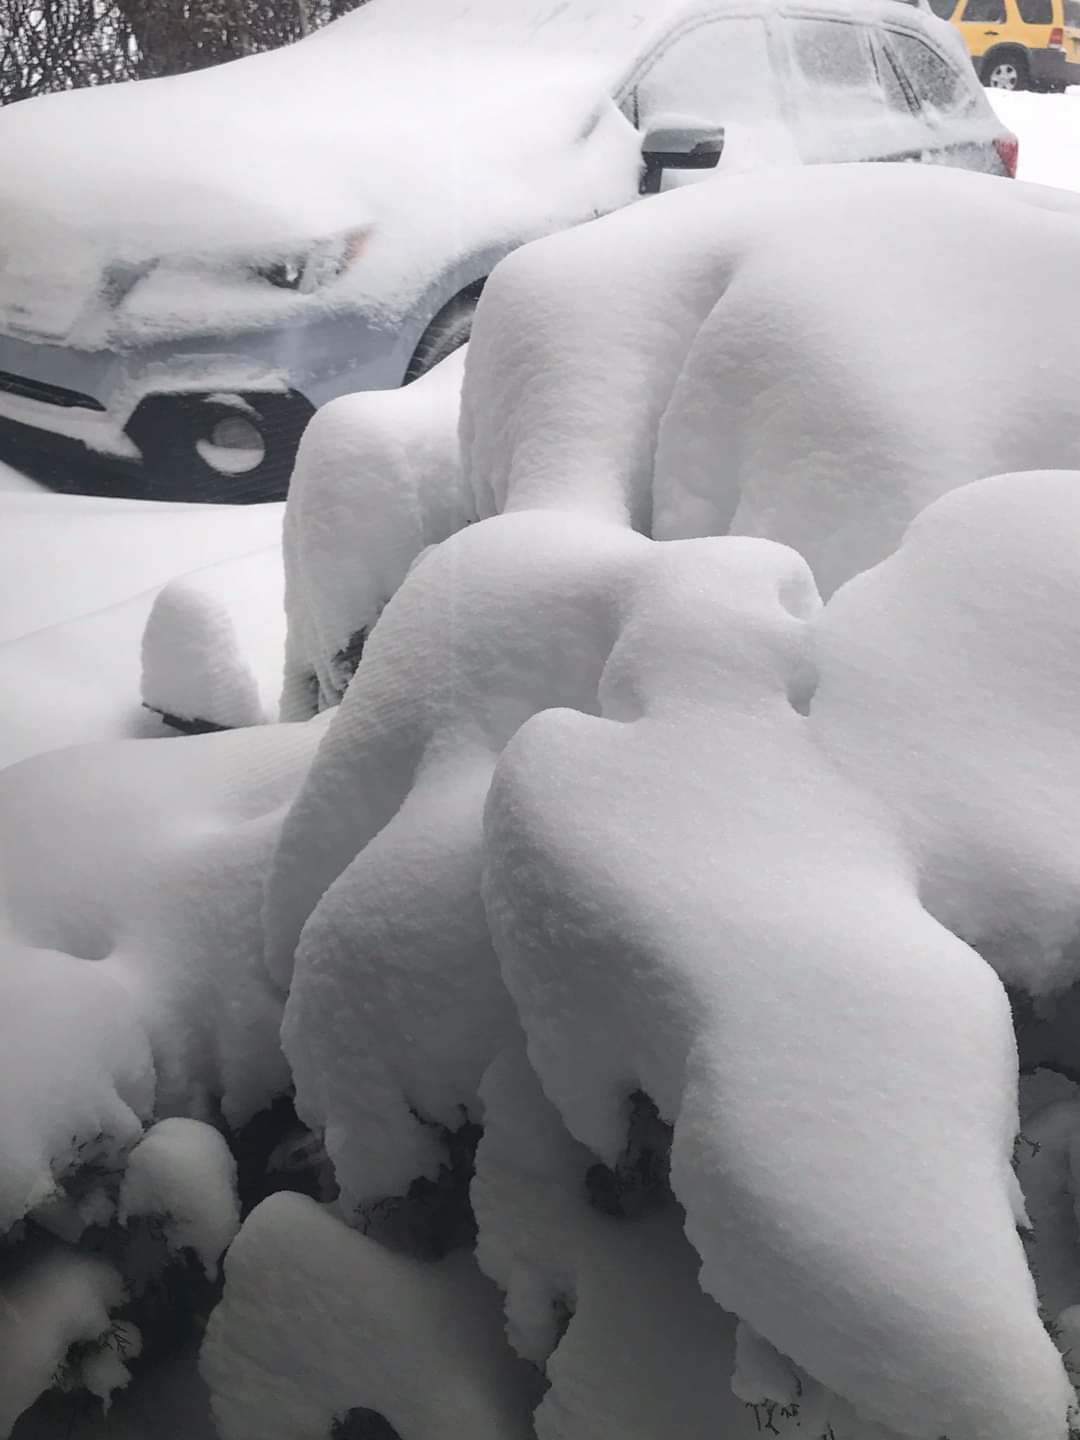 Hatalmas hóvihar, több méteres hófúvások Kanadában! Elképesztő felvételek! (Képek, Videók, Alberta) 9